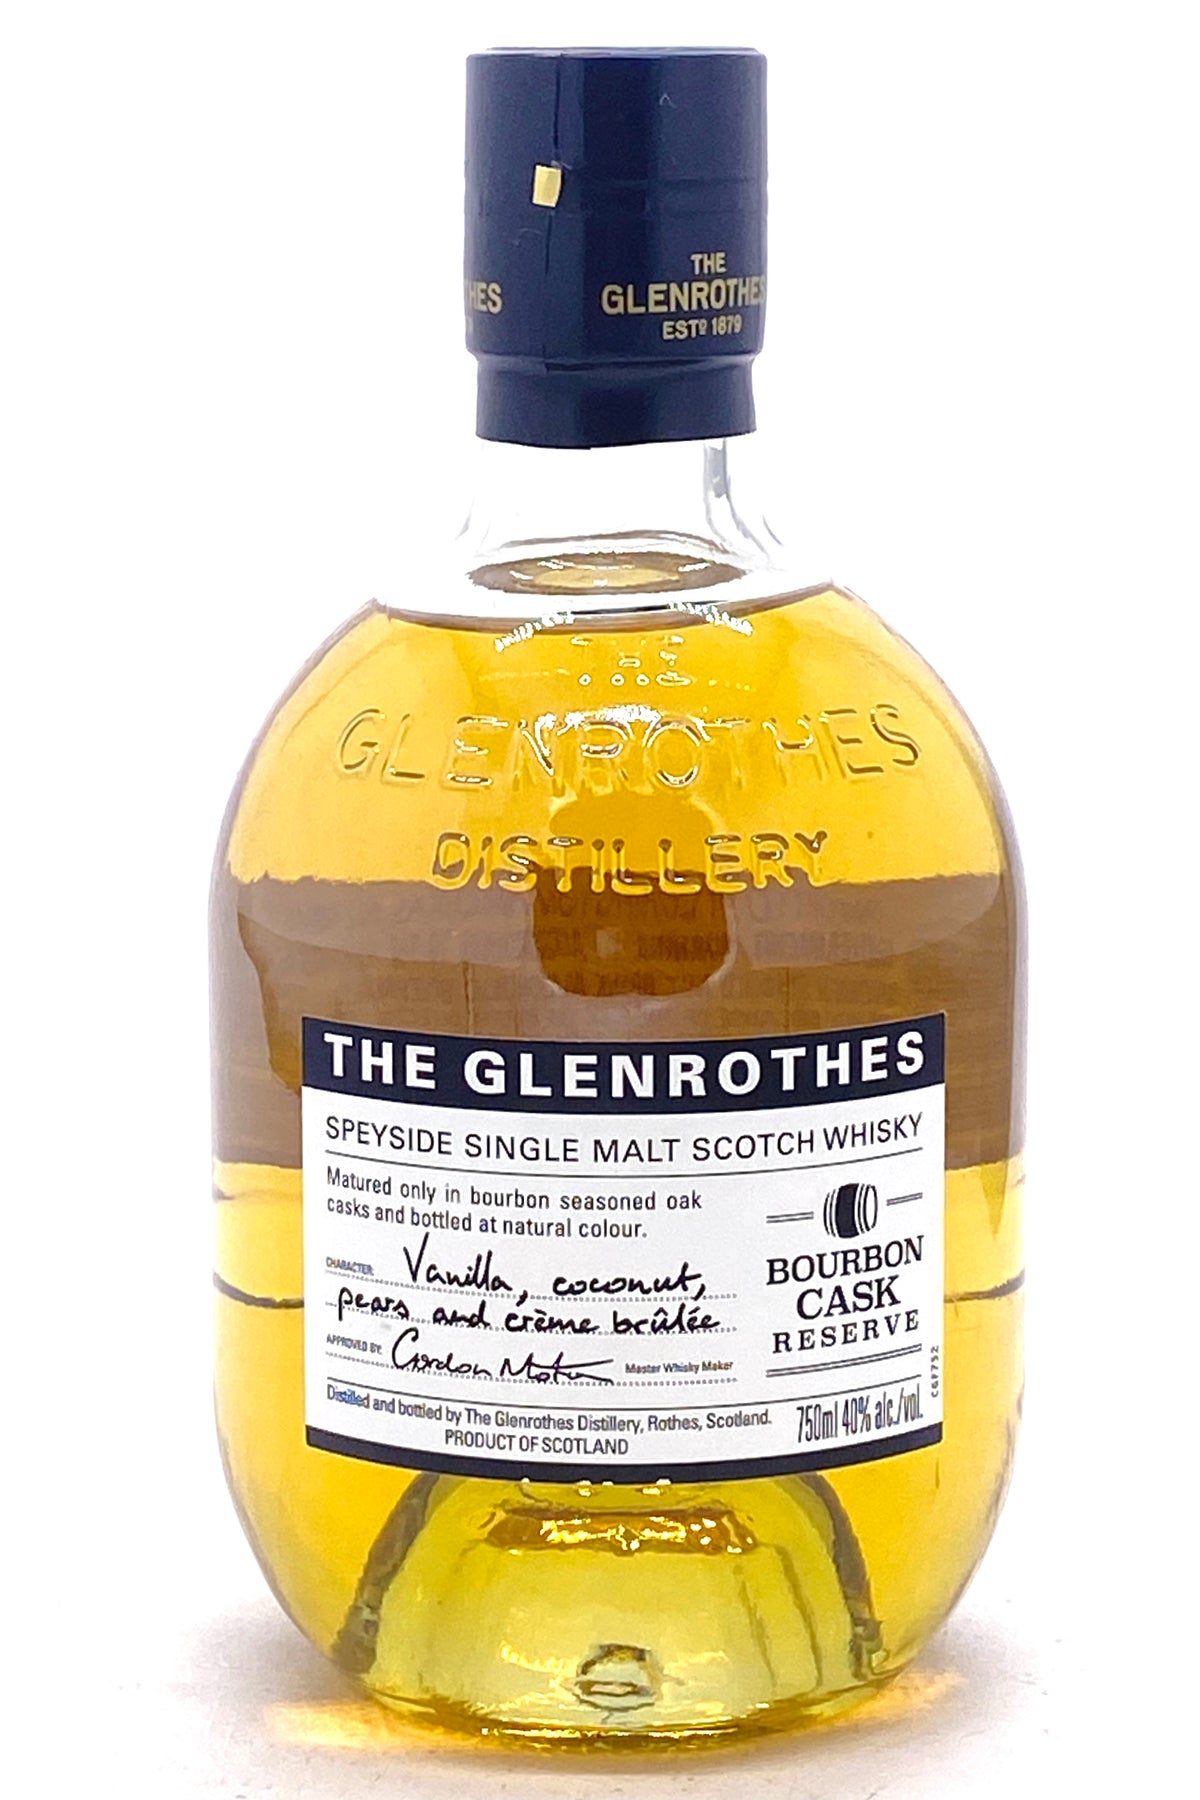 Glenrothes Bourbon Cask Reserve Scotch Whisky